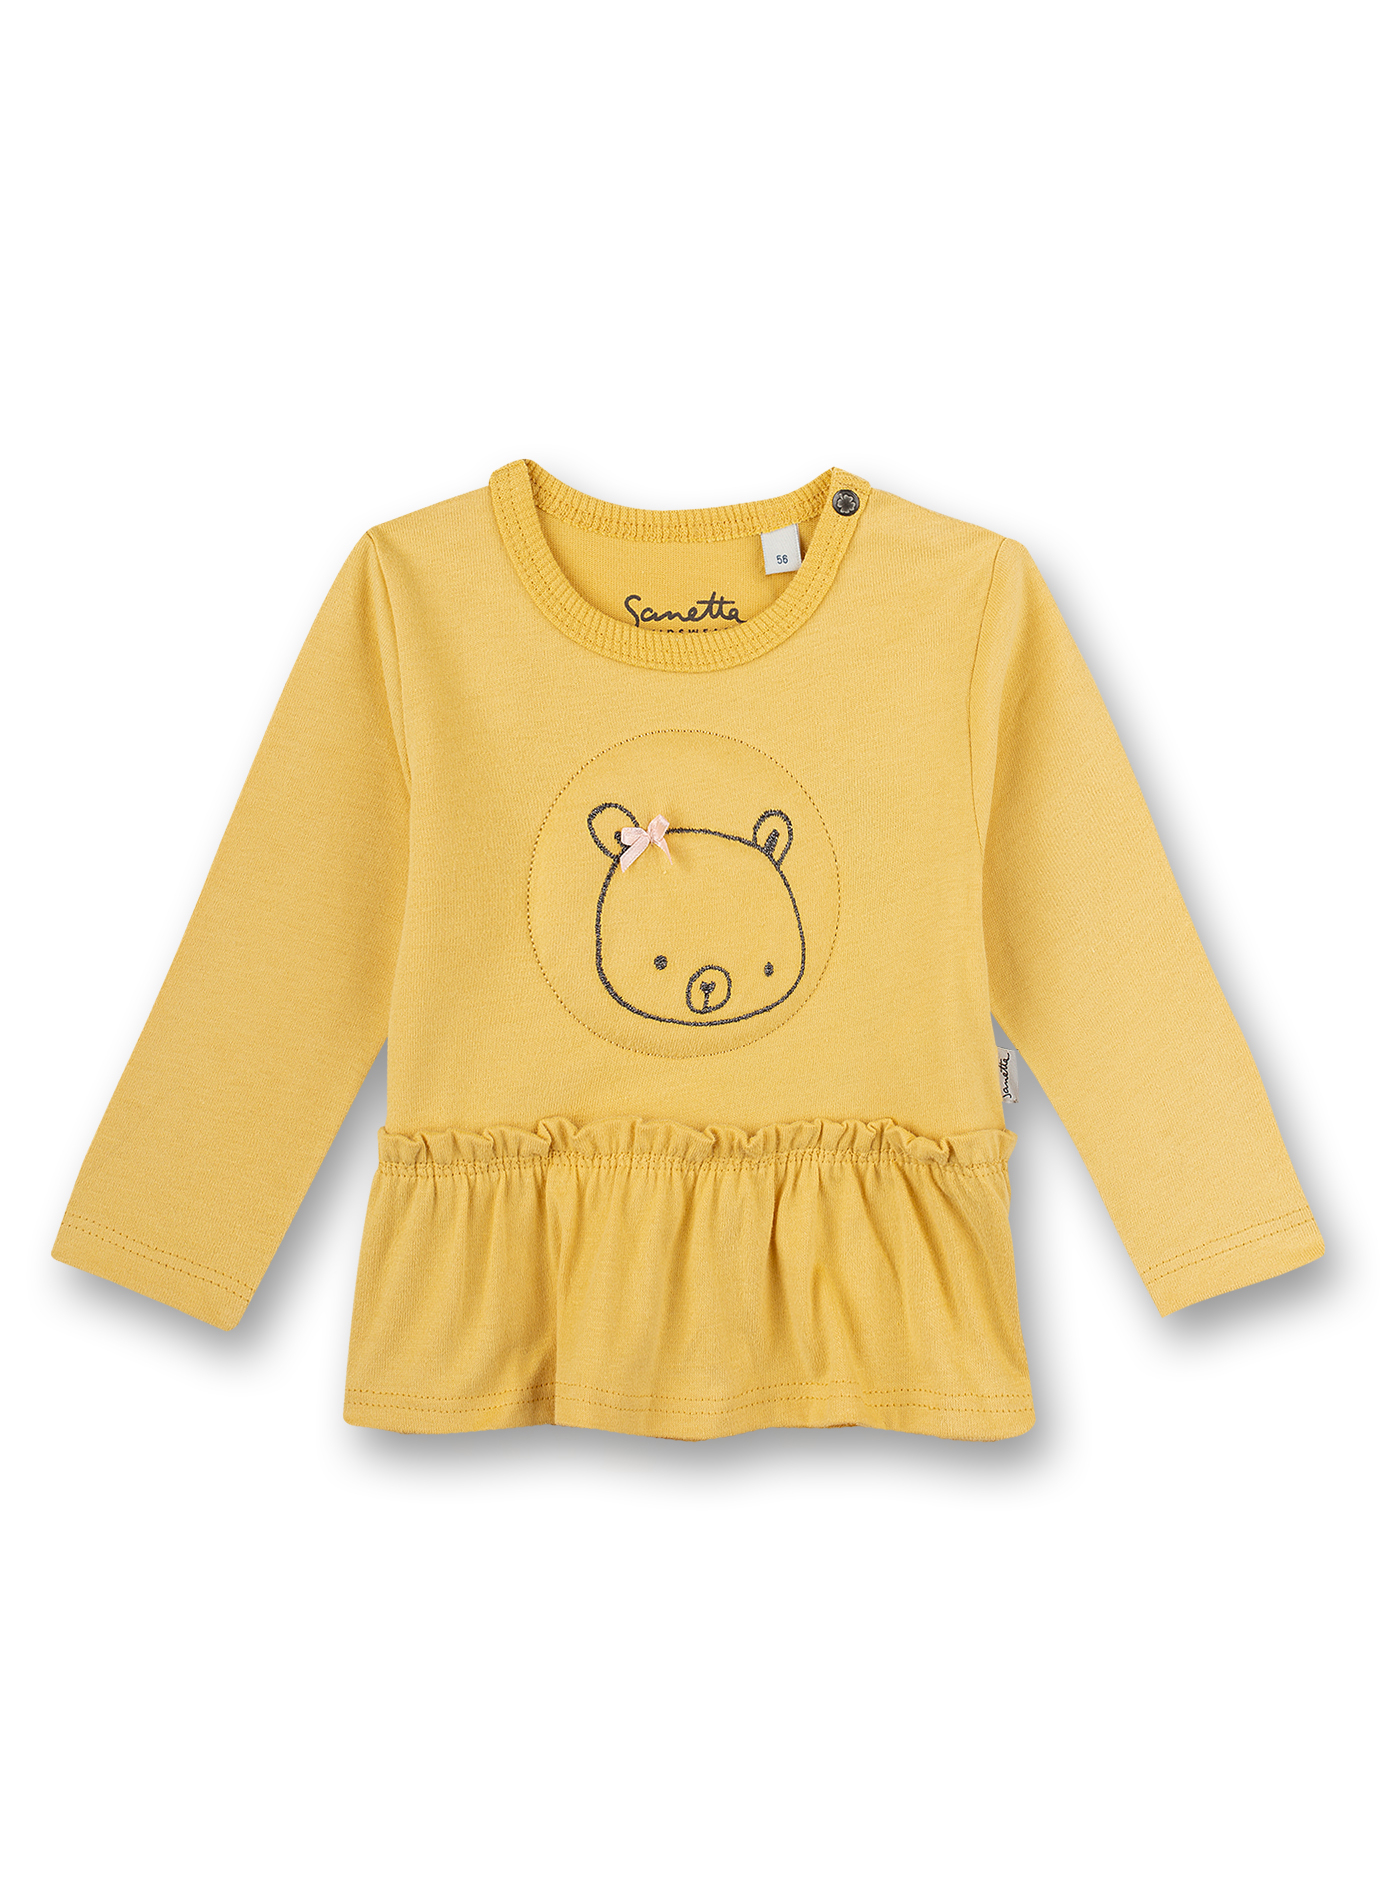 Mädchen-Shirt langarm Gelb Little Bear